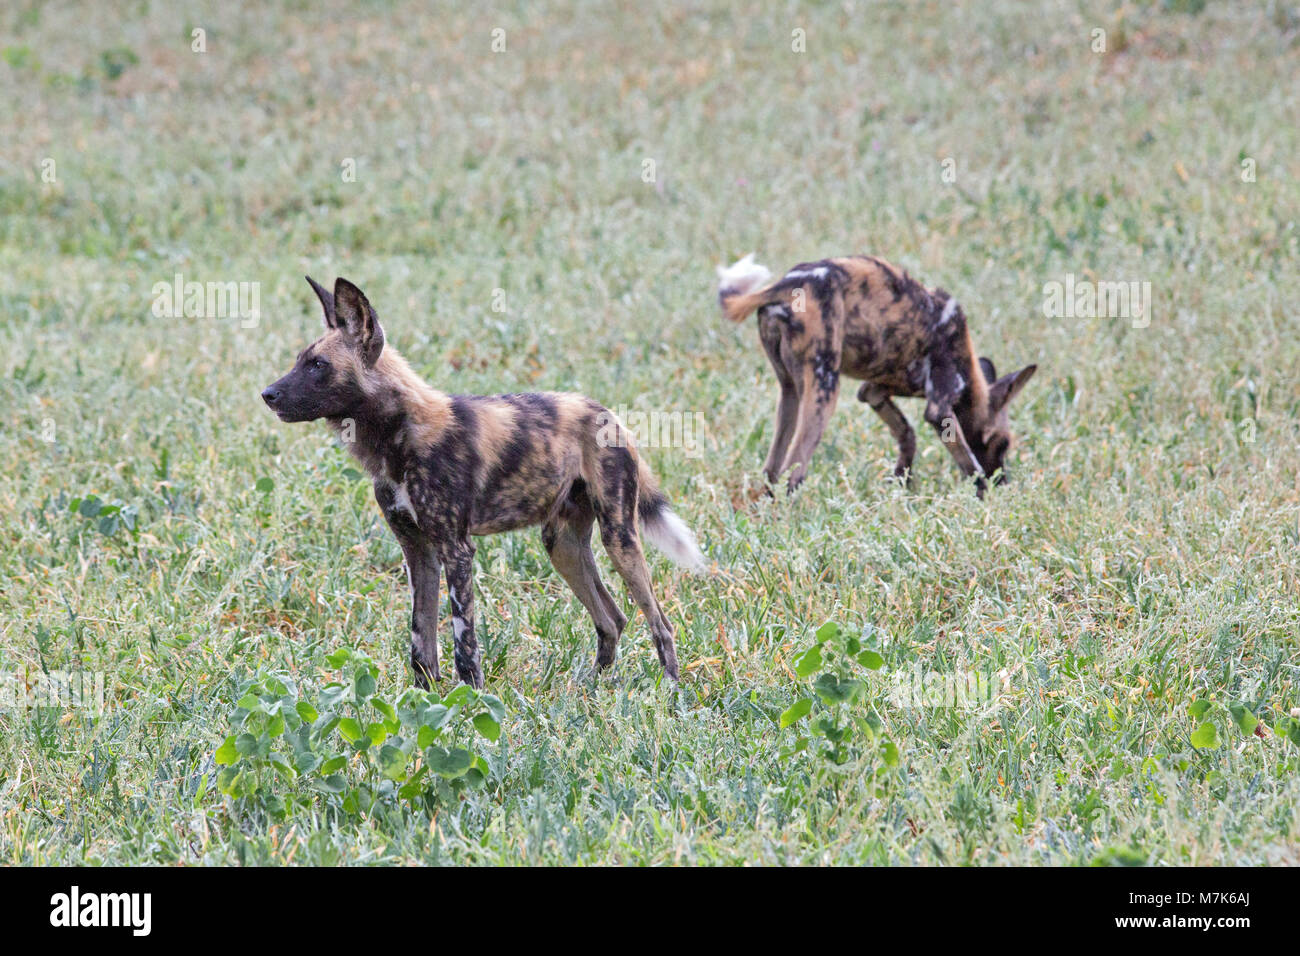 Afrikanische Jagd Hund, afrikanischen Wilden Hund, Hunde oder Lackiert (Lycaon pictus). Zwei aus einem Pack positionieren sich bereit, eine plötzliche vorschnellen, explosive, um b Stockfoto